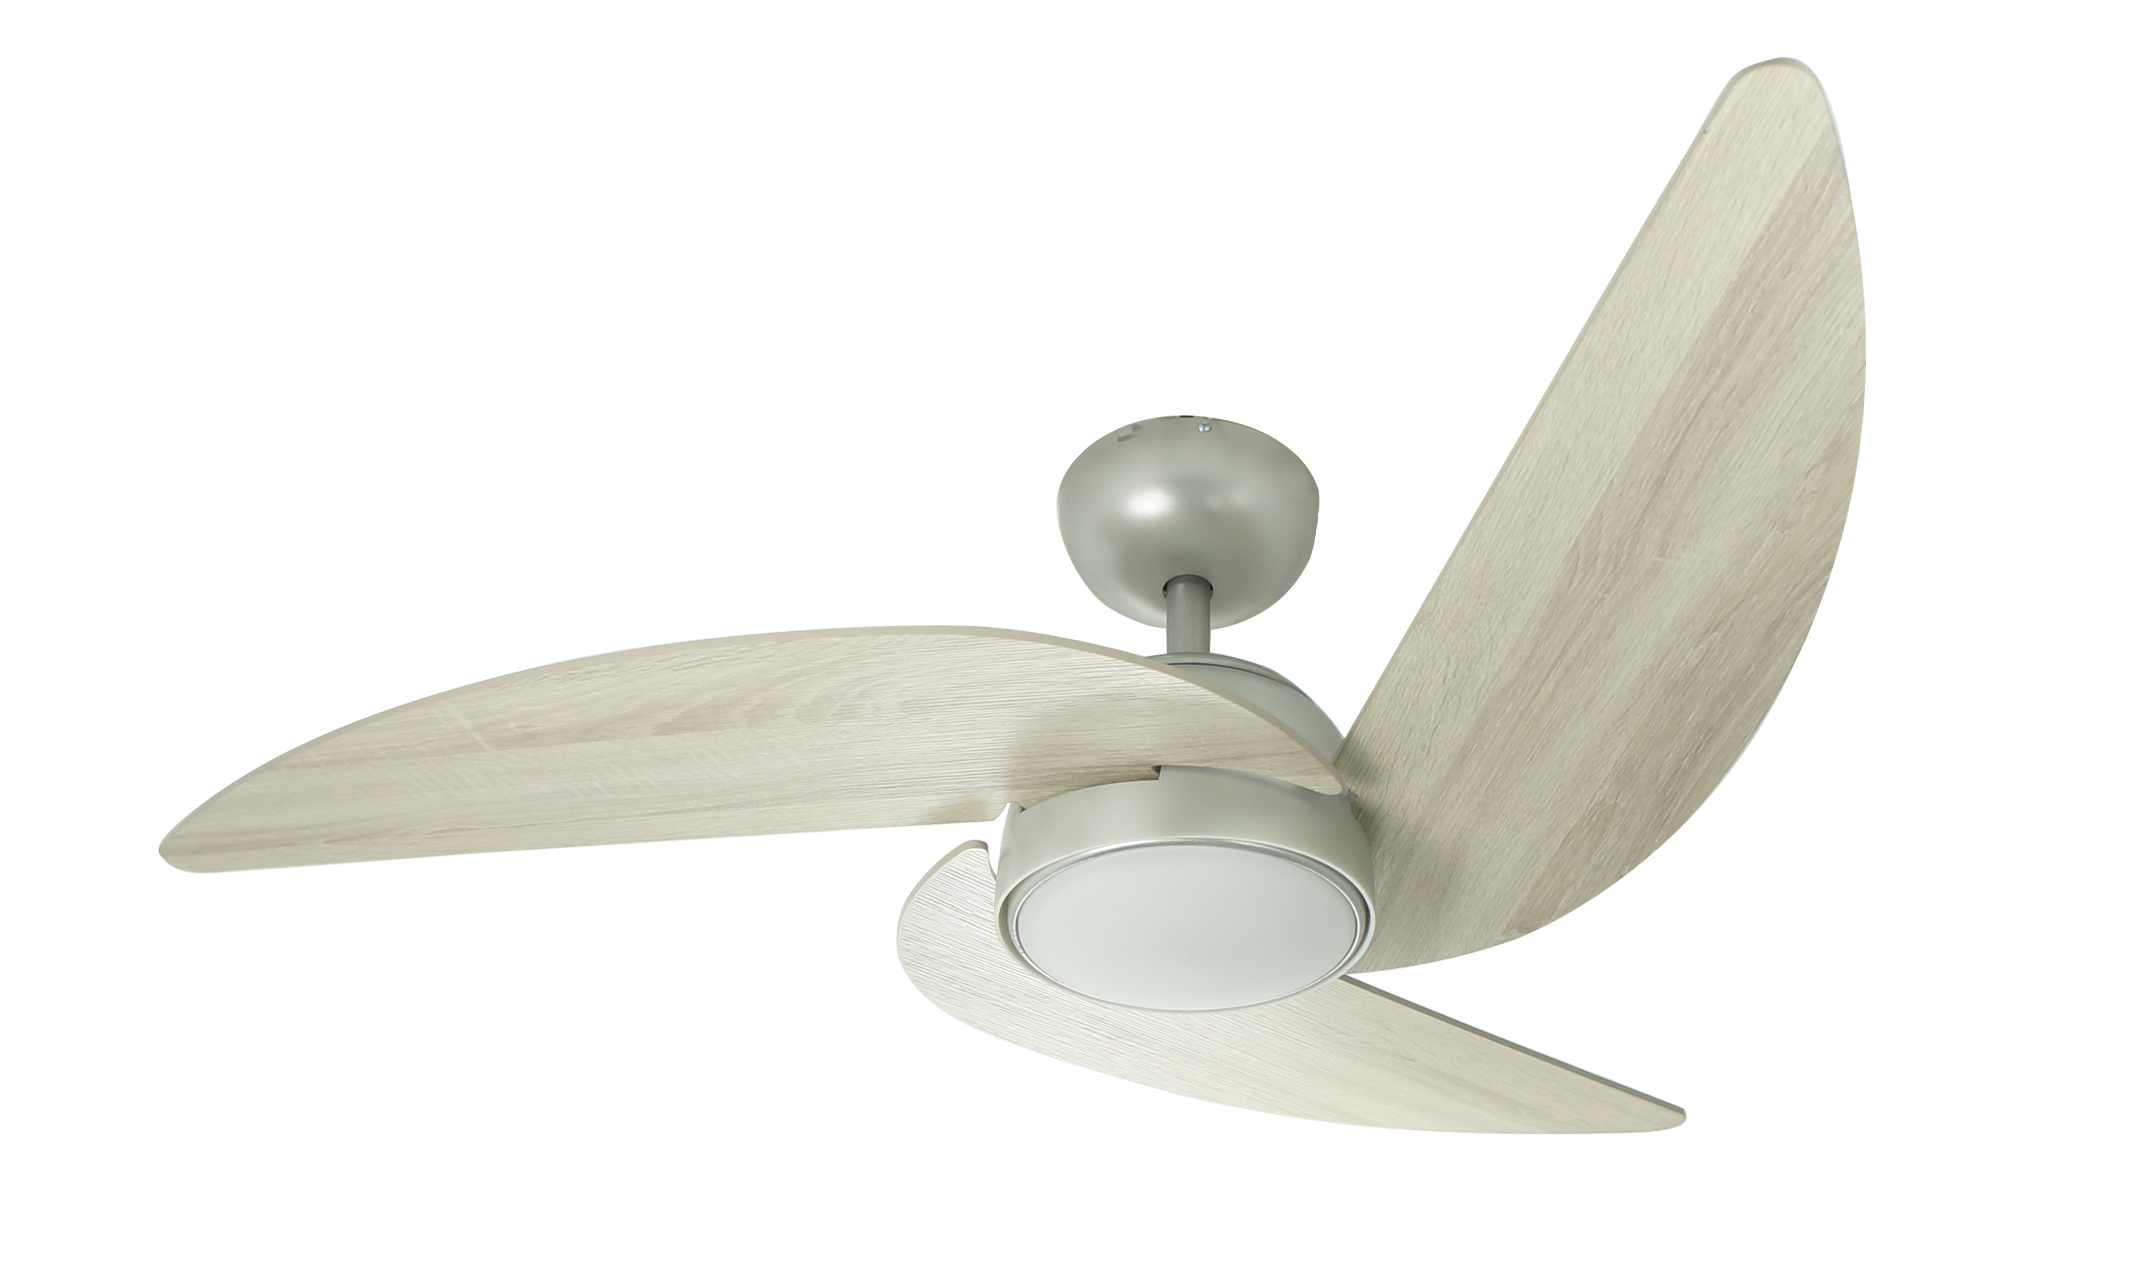 Airbena 45 "ABS ventilador de techo con luz - perfecto para enfriamiento de hogares e iluminación